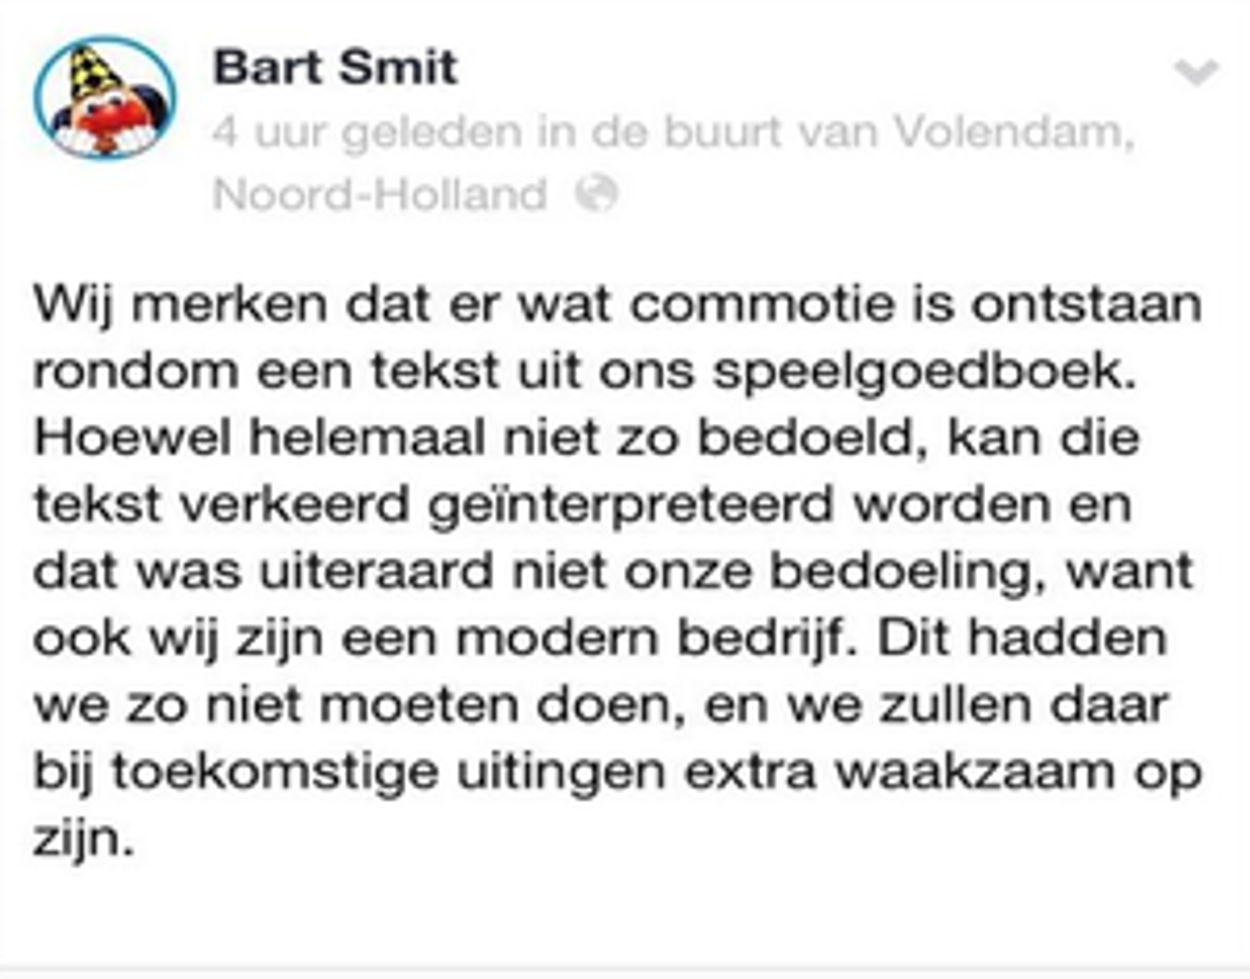 Bart Smit slaapt door emancipatie heen - - BNNVARA